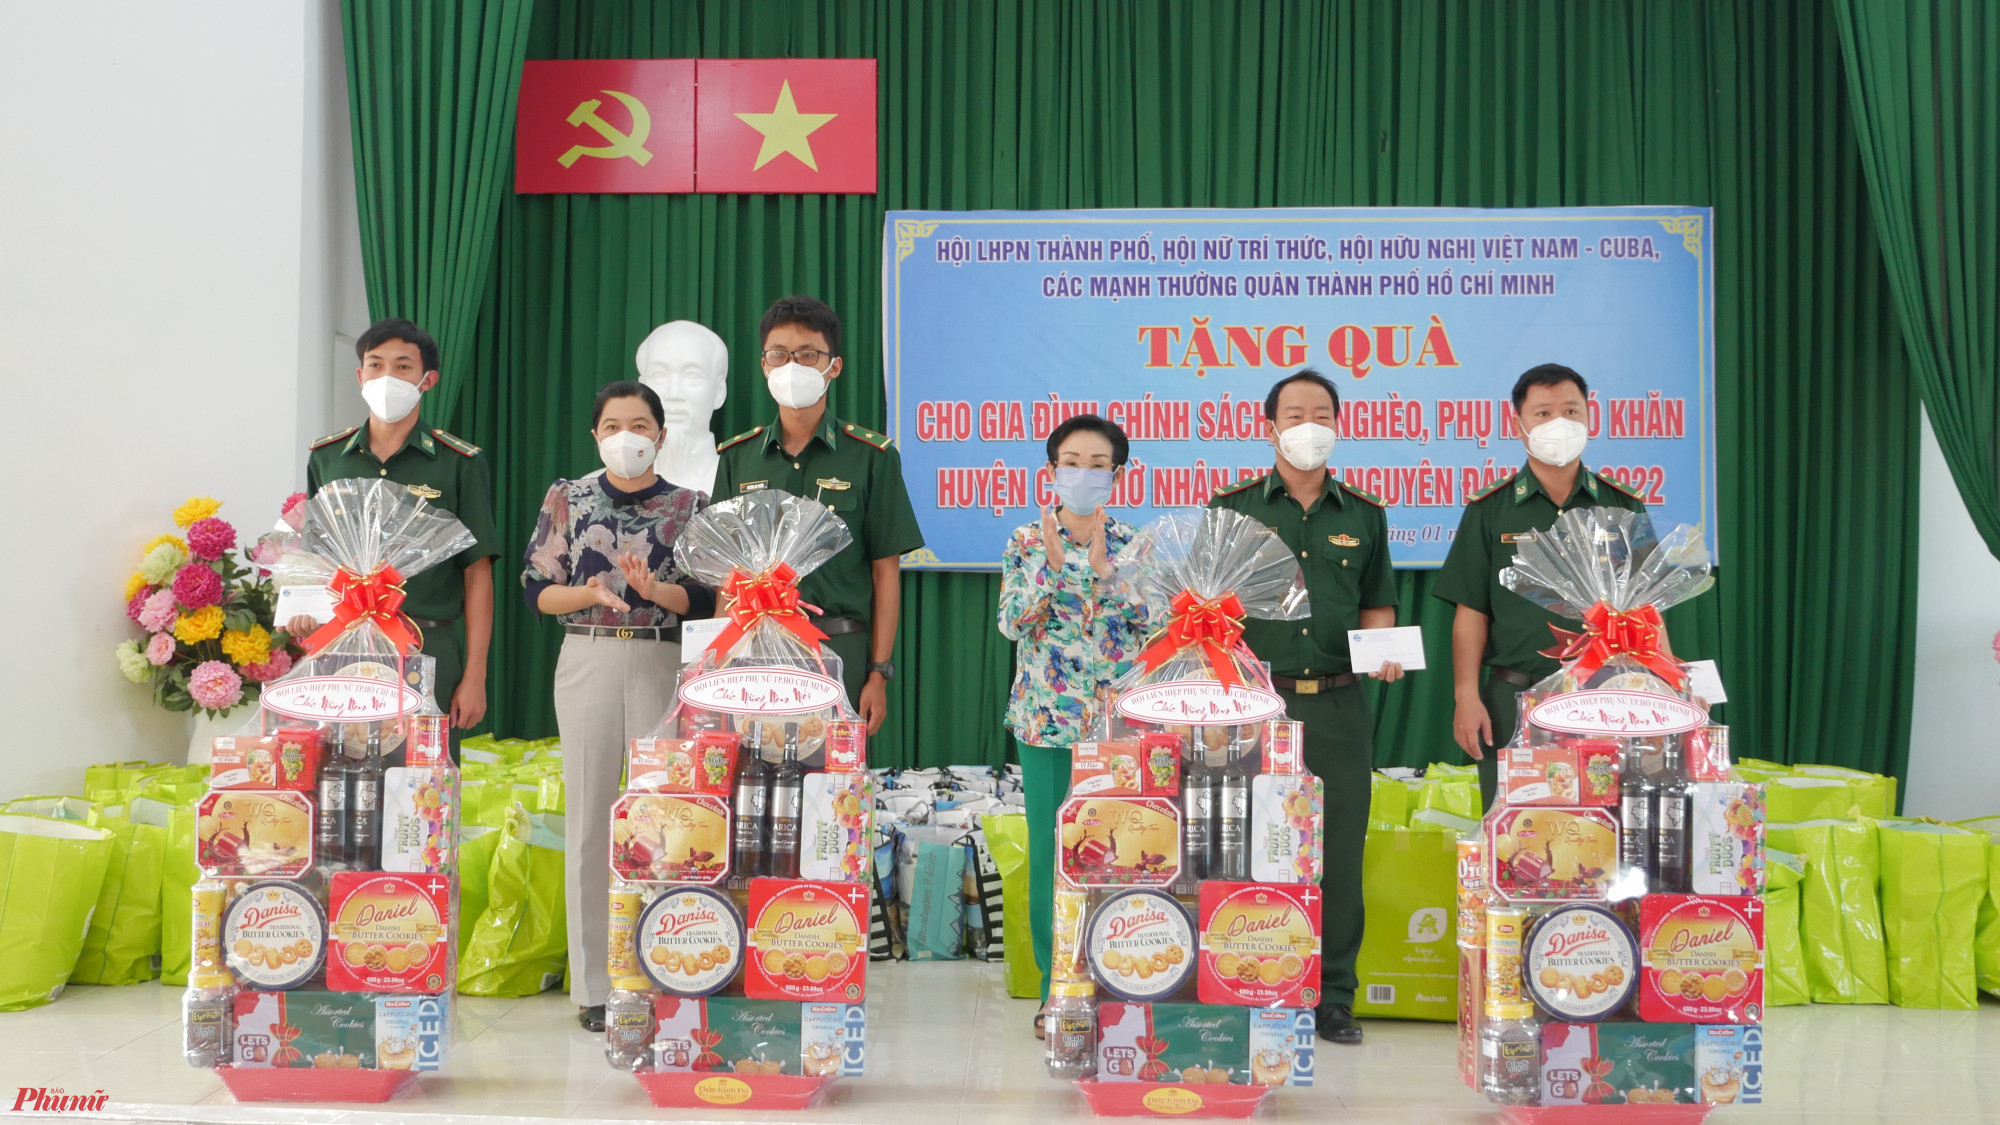 Dịp này, Hội trao tặng 4 phần quà đến các đơn vị Đồn biên phòng tại huyện Cần Giờ.